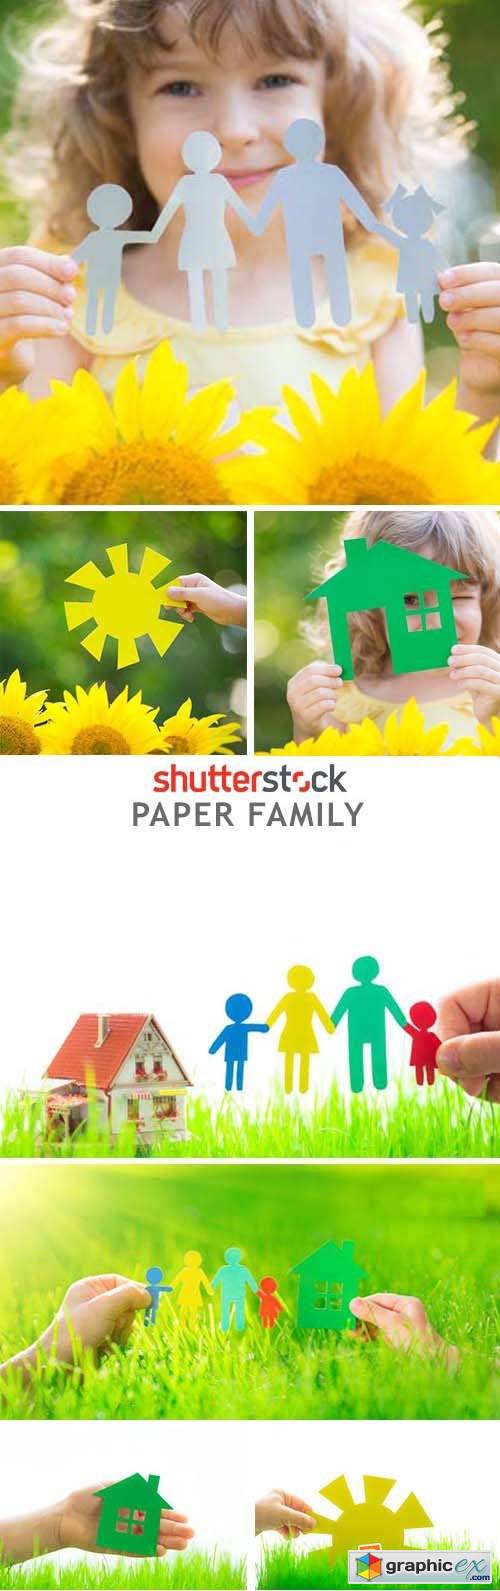 Paper Family - 25xJPG